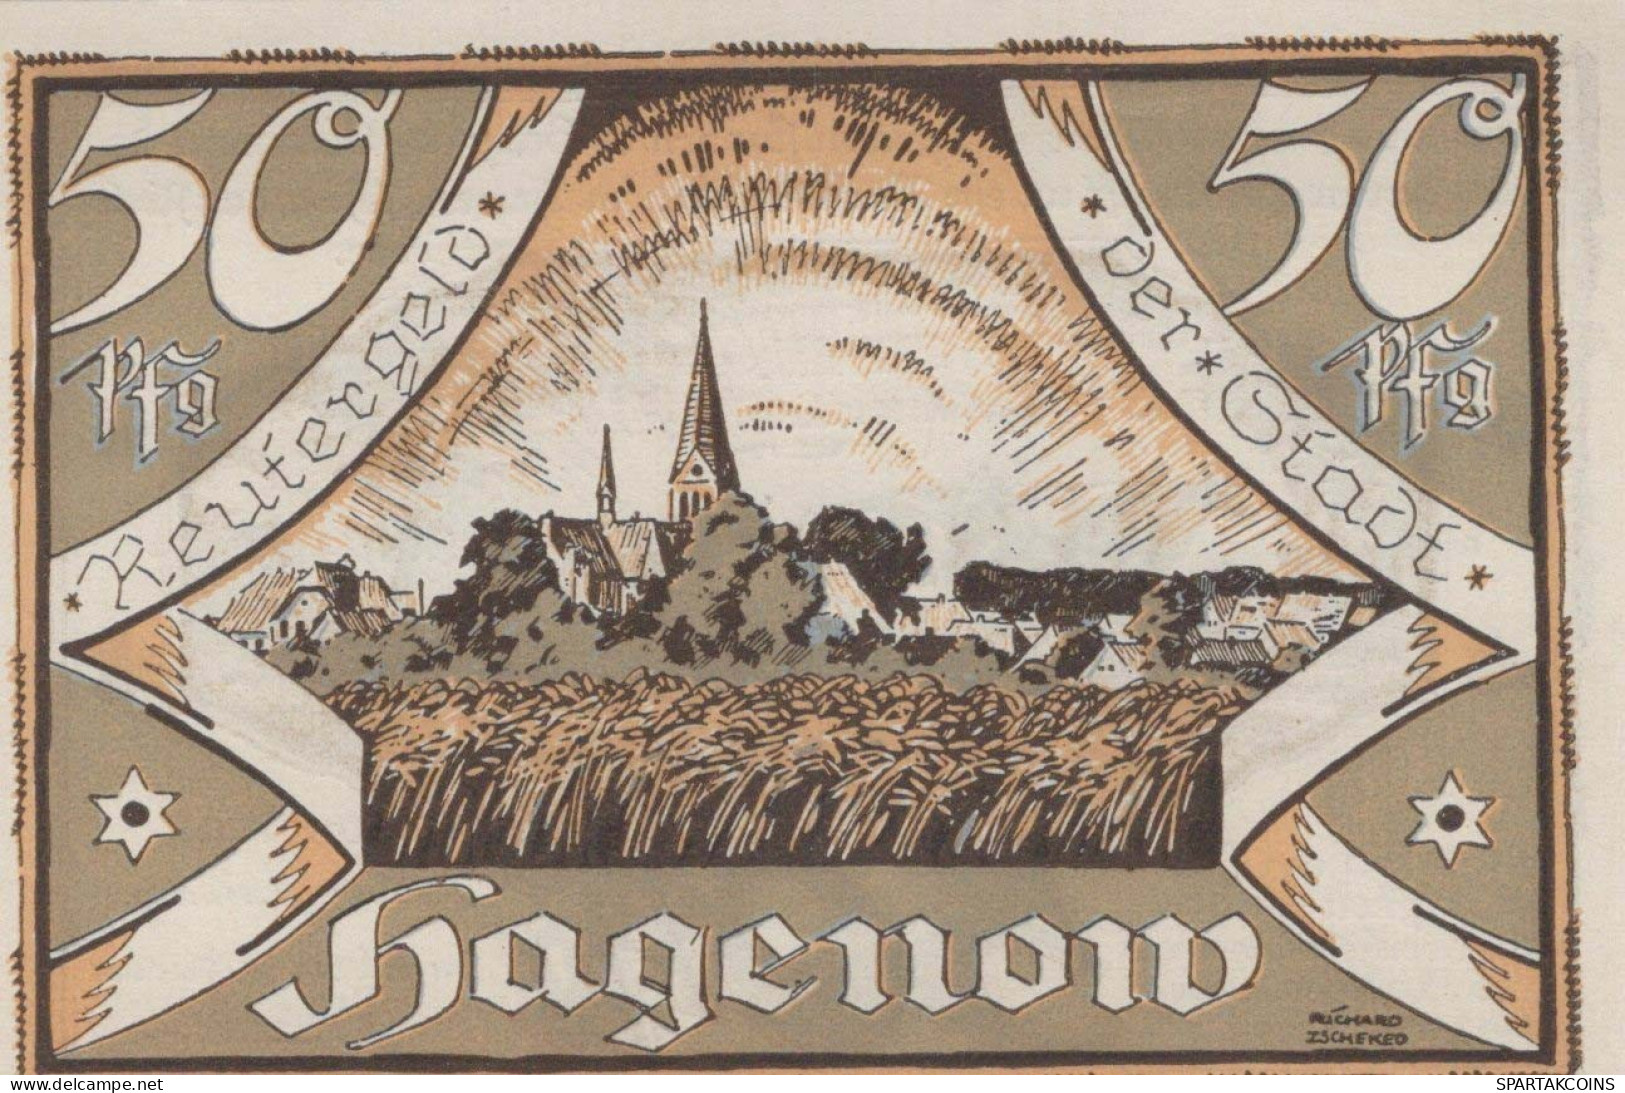 50 PFENNIG 1922 Stadt HAGENOW Mecklenburg-Schwerin DEUTSCHLAND Notgeld #PJ137 - [11] Emissions Locales